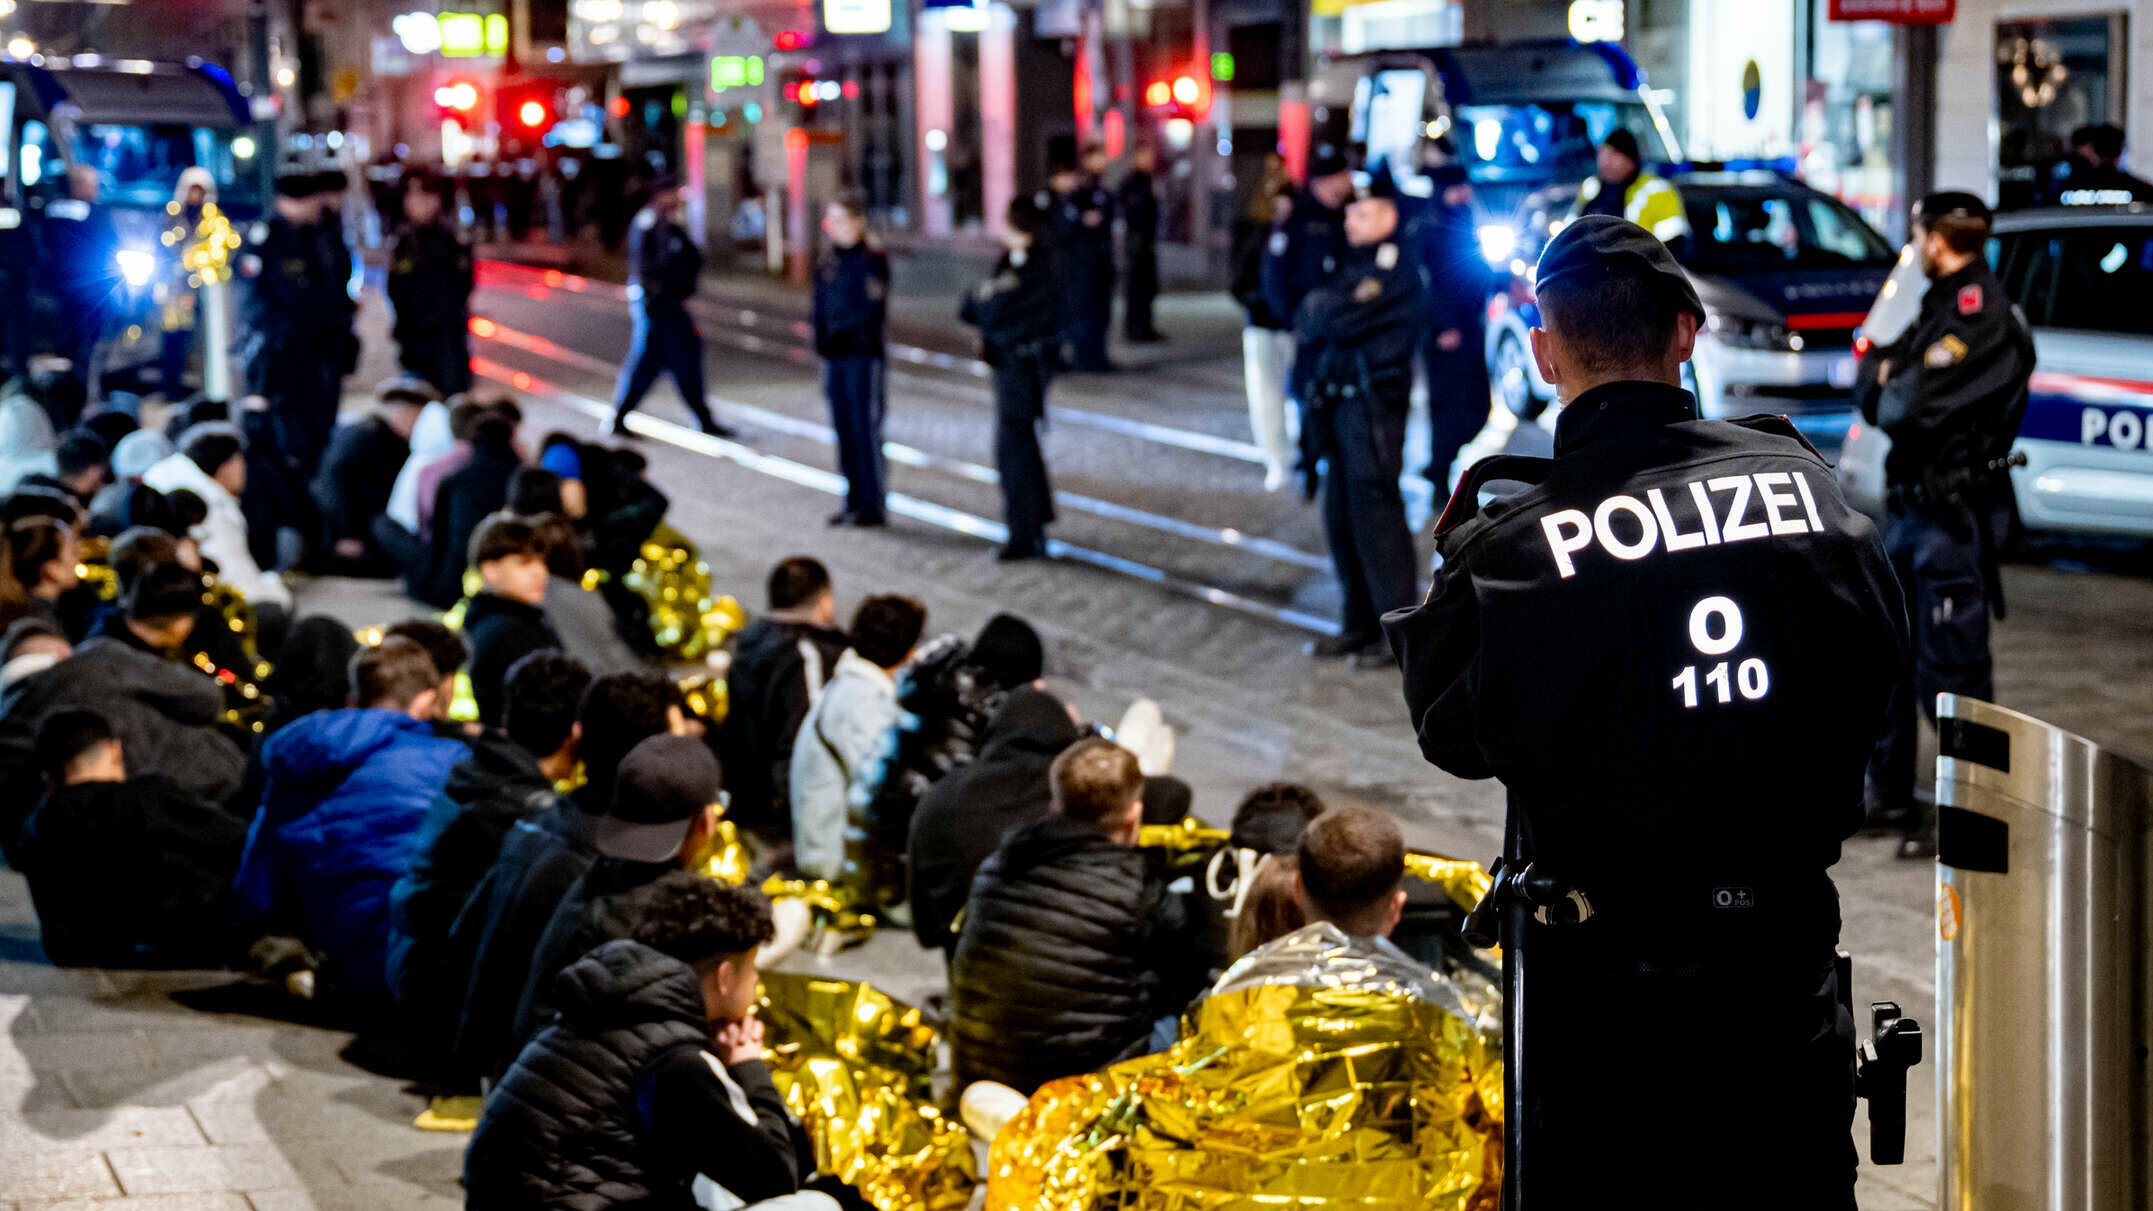 ليلة الهالويين في لينز، الشرطة النمساوية تعتقل يافعين